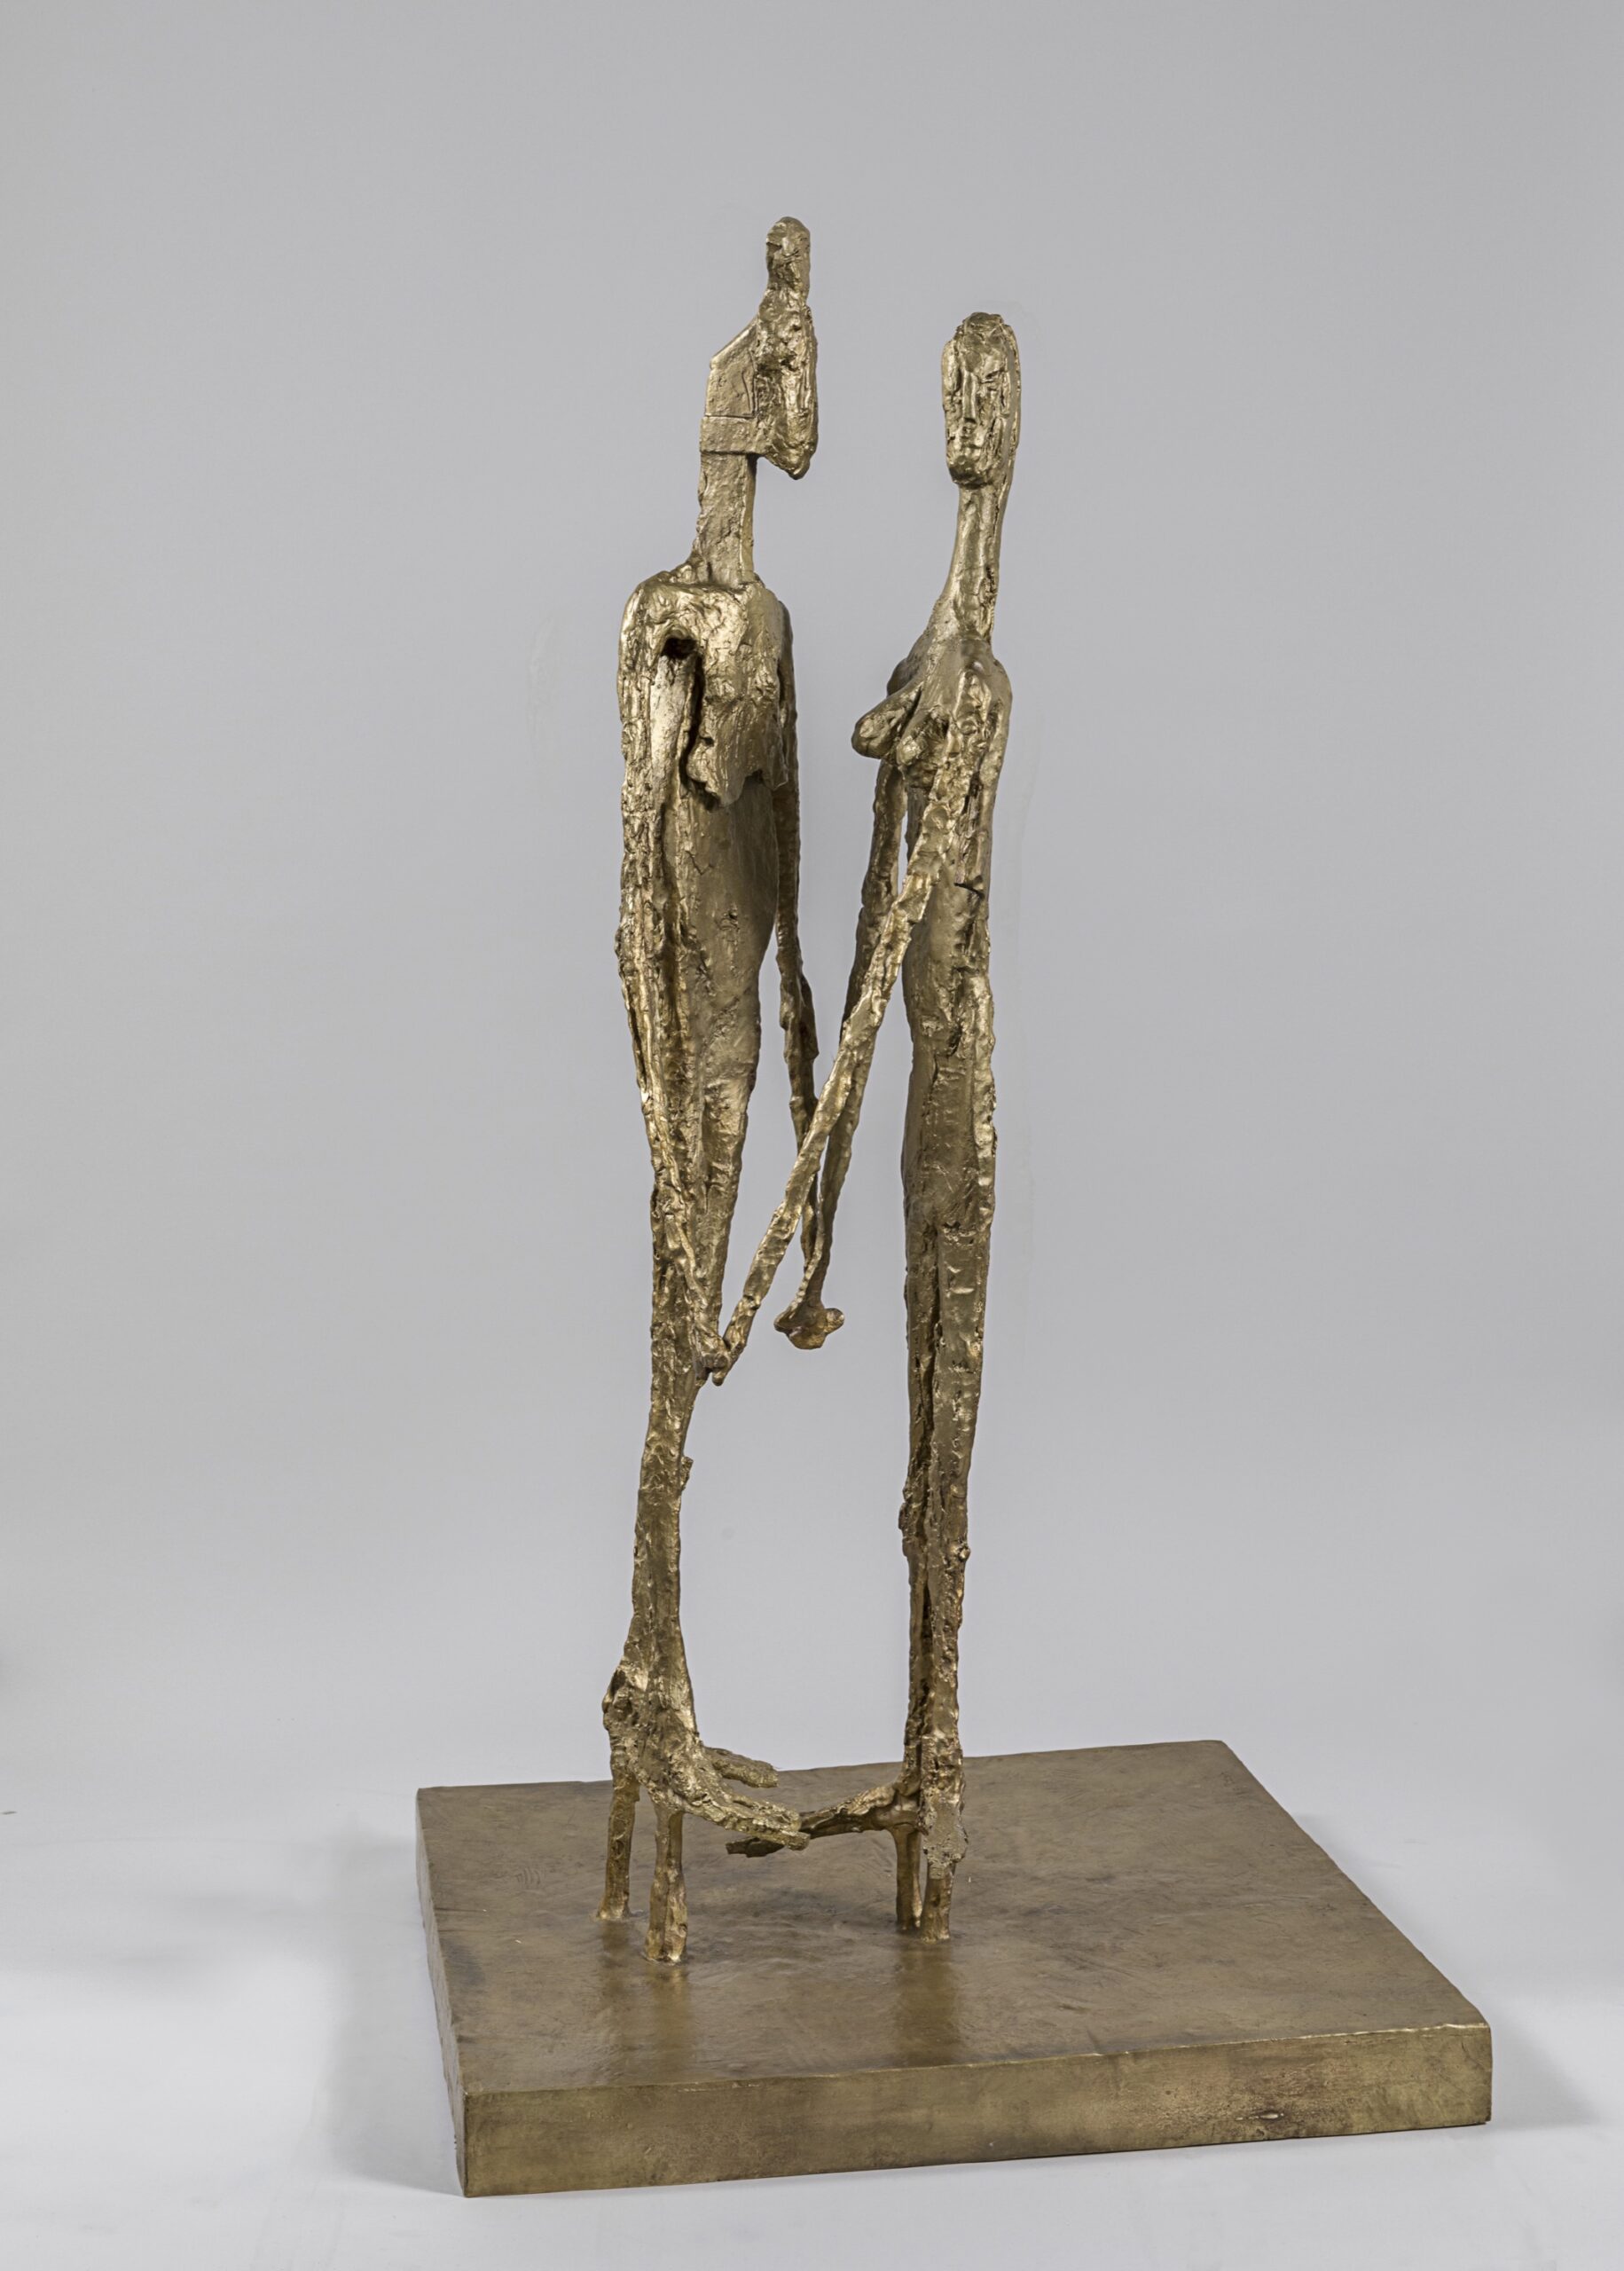 Germaine Richier (1902-1959), Le Couple, 1956. Bronze naturel, ed. 3/6, 139 x 74,5 x 74,5 cm. Bruxelles, galerie de La Béraudière. Photo service de presse. © Adagp, Paris, 2022